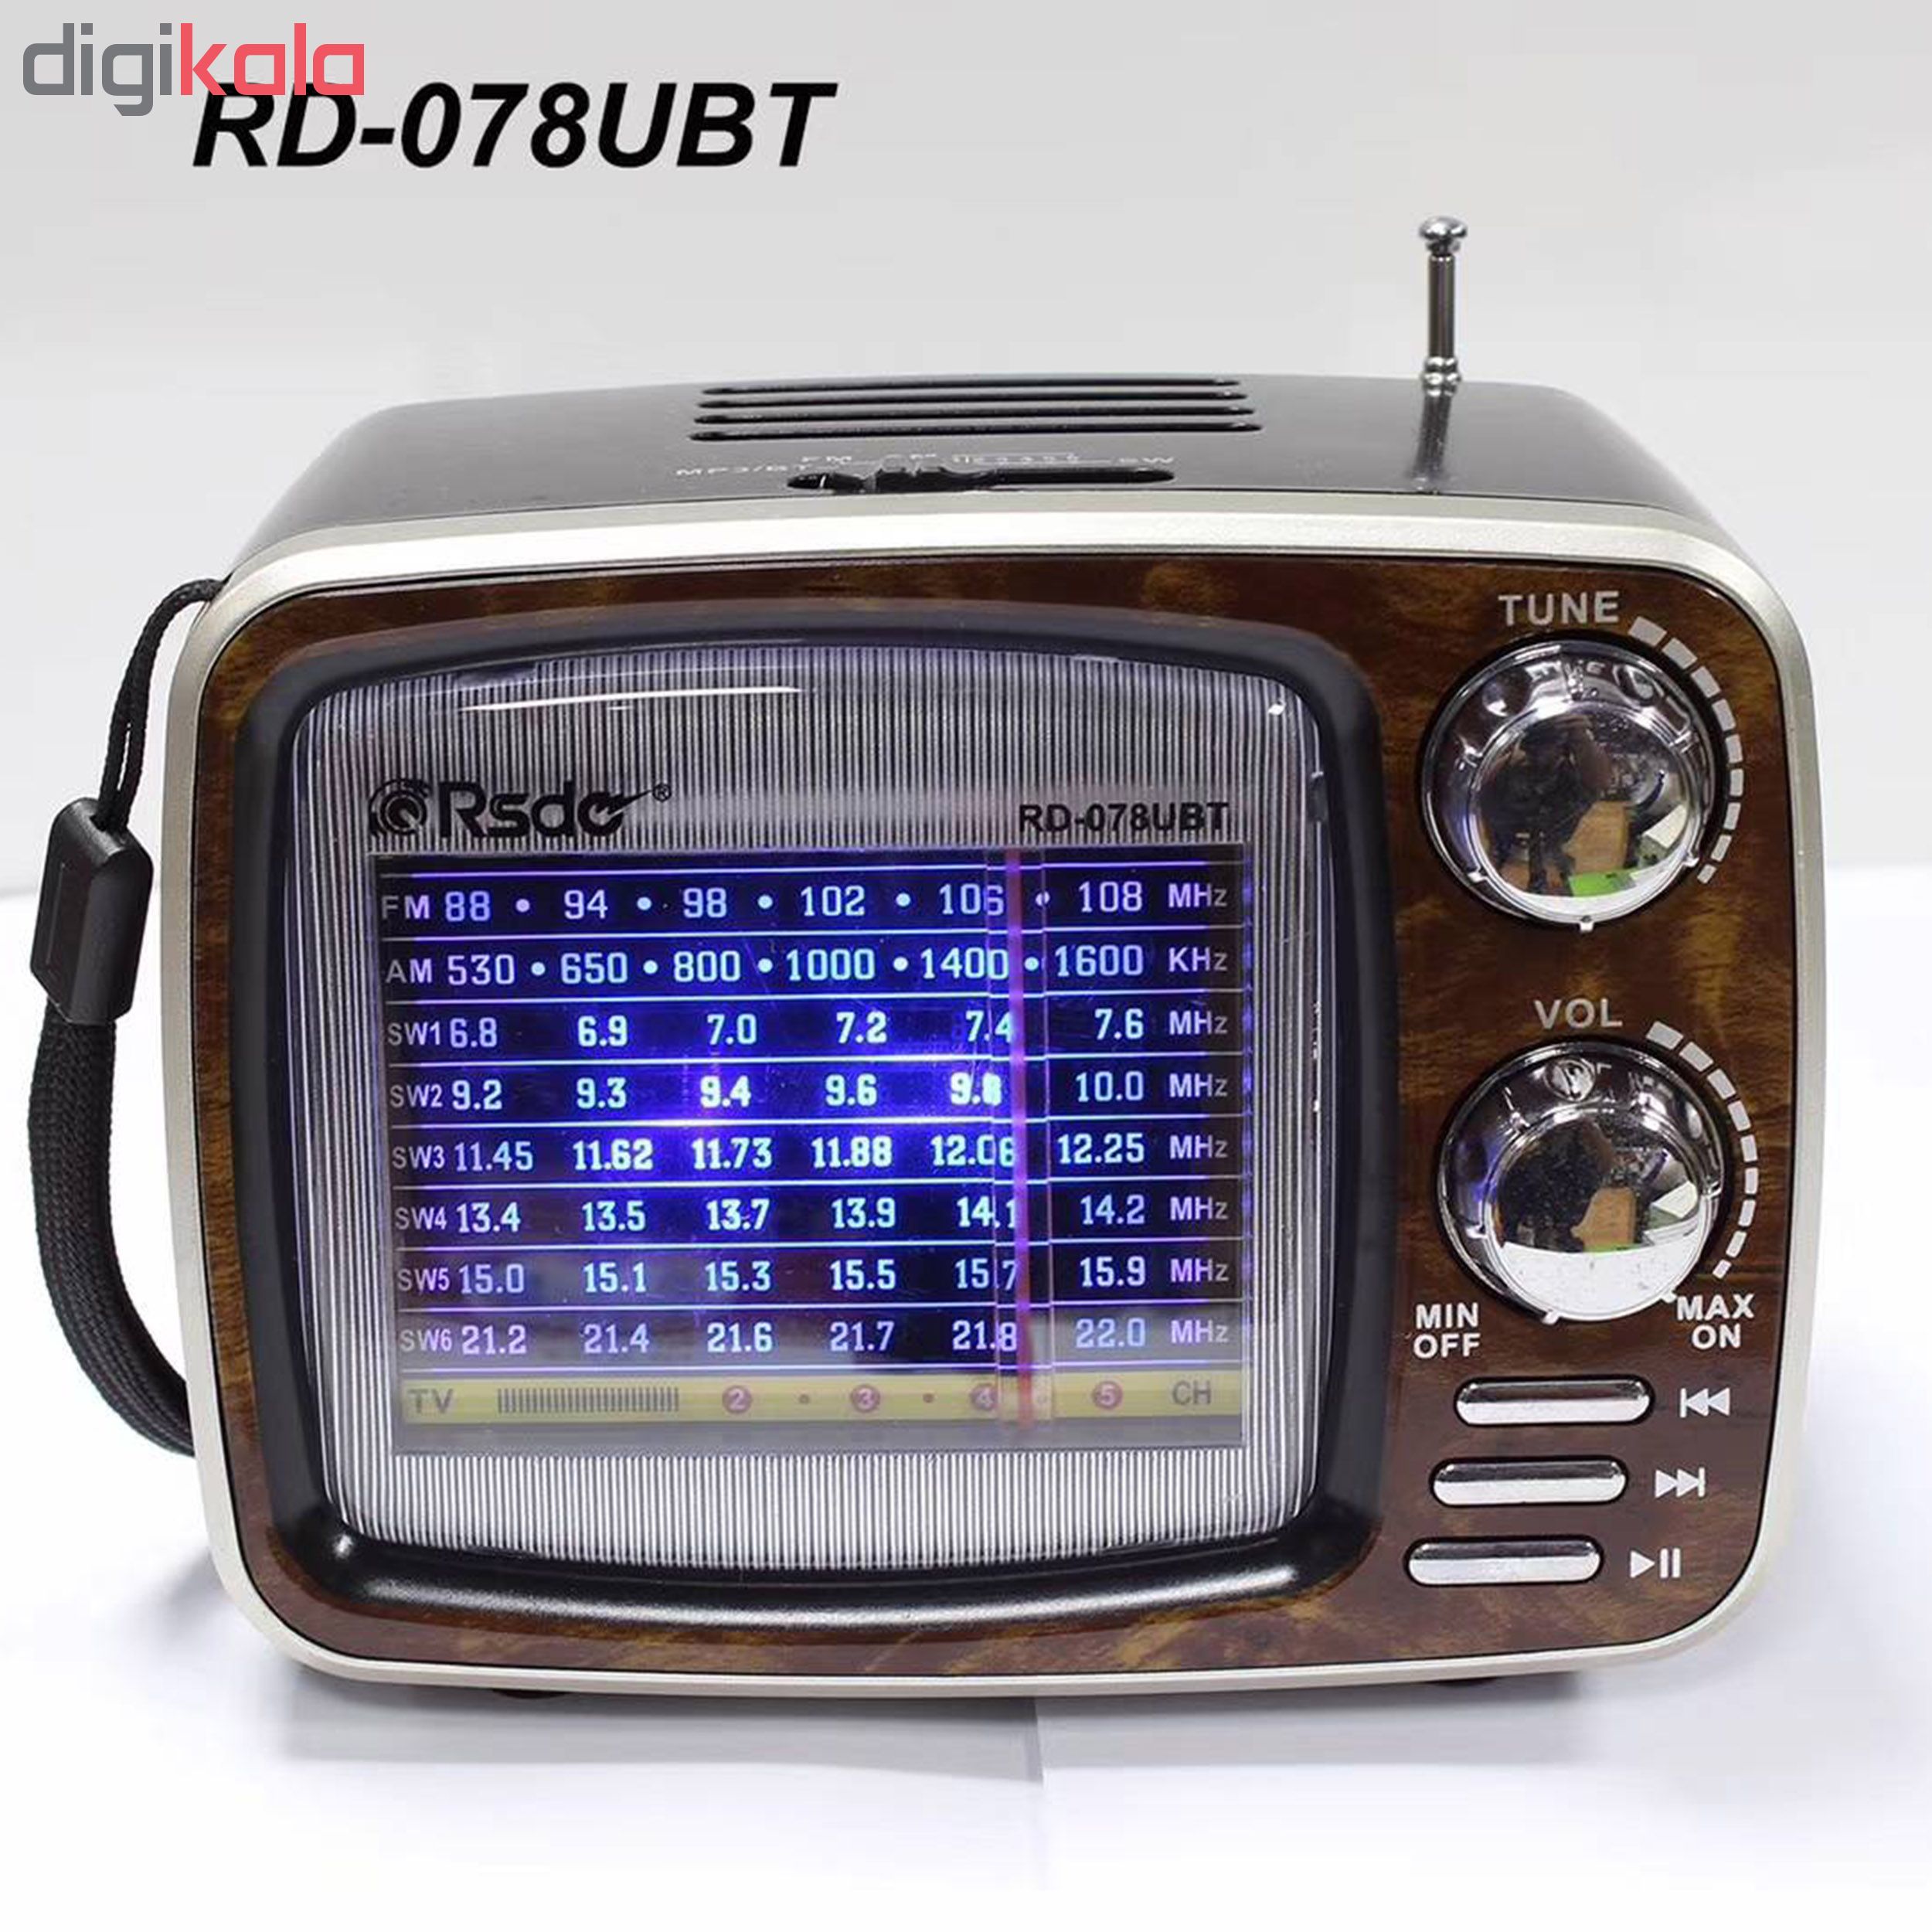 رادیو ار اس دی او مدل RD-078UBT